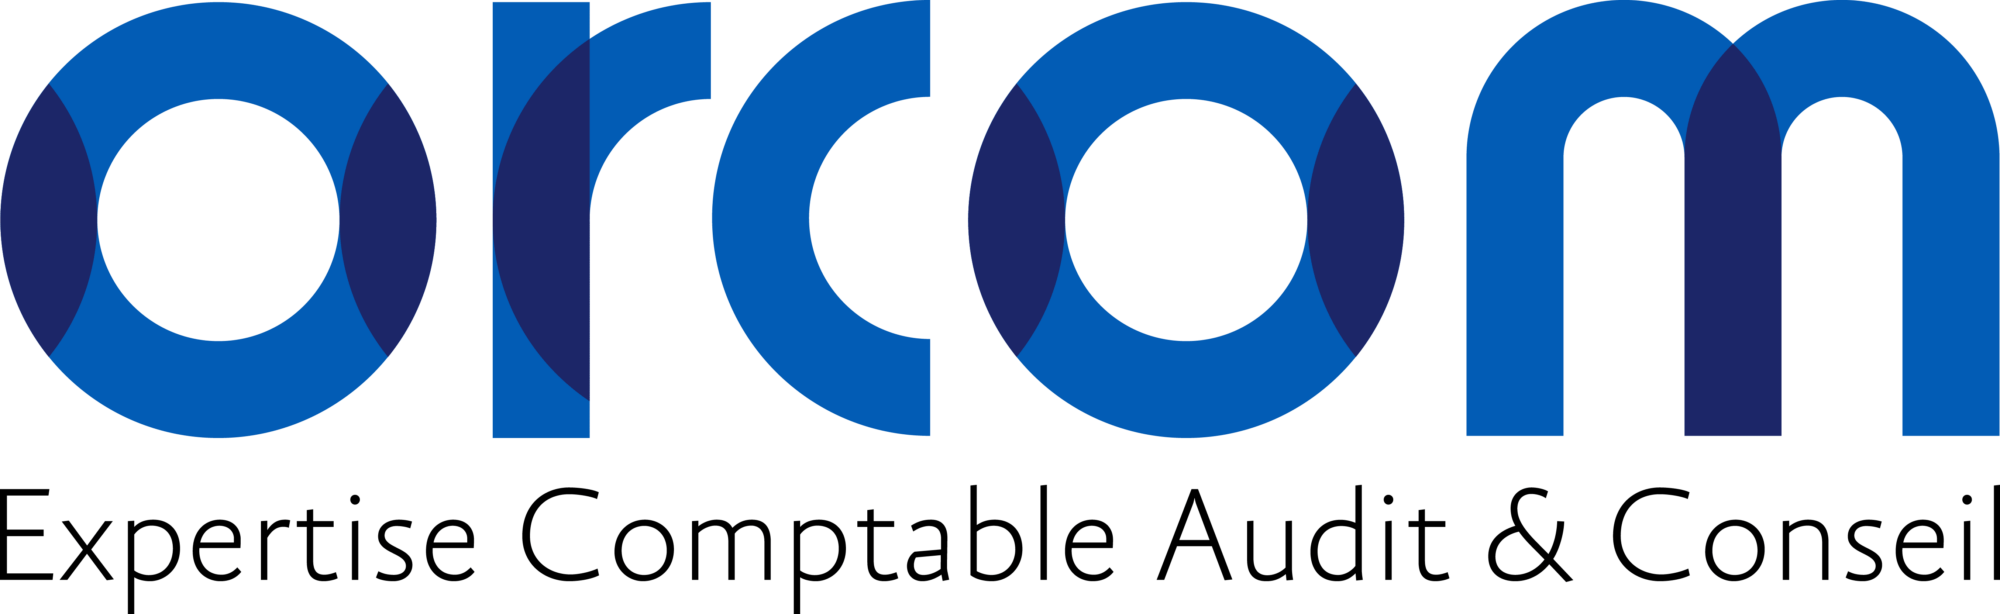 Logo client Orcom